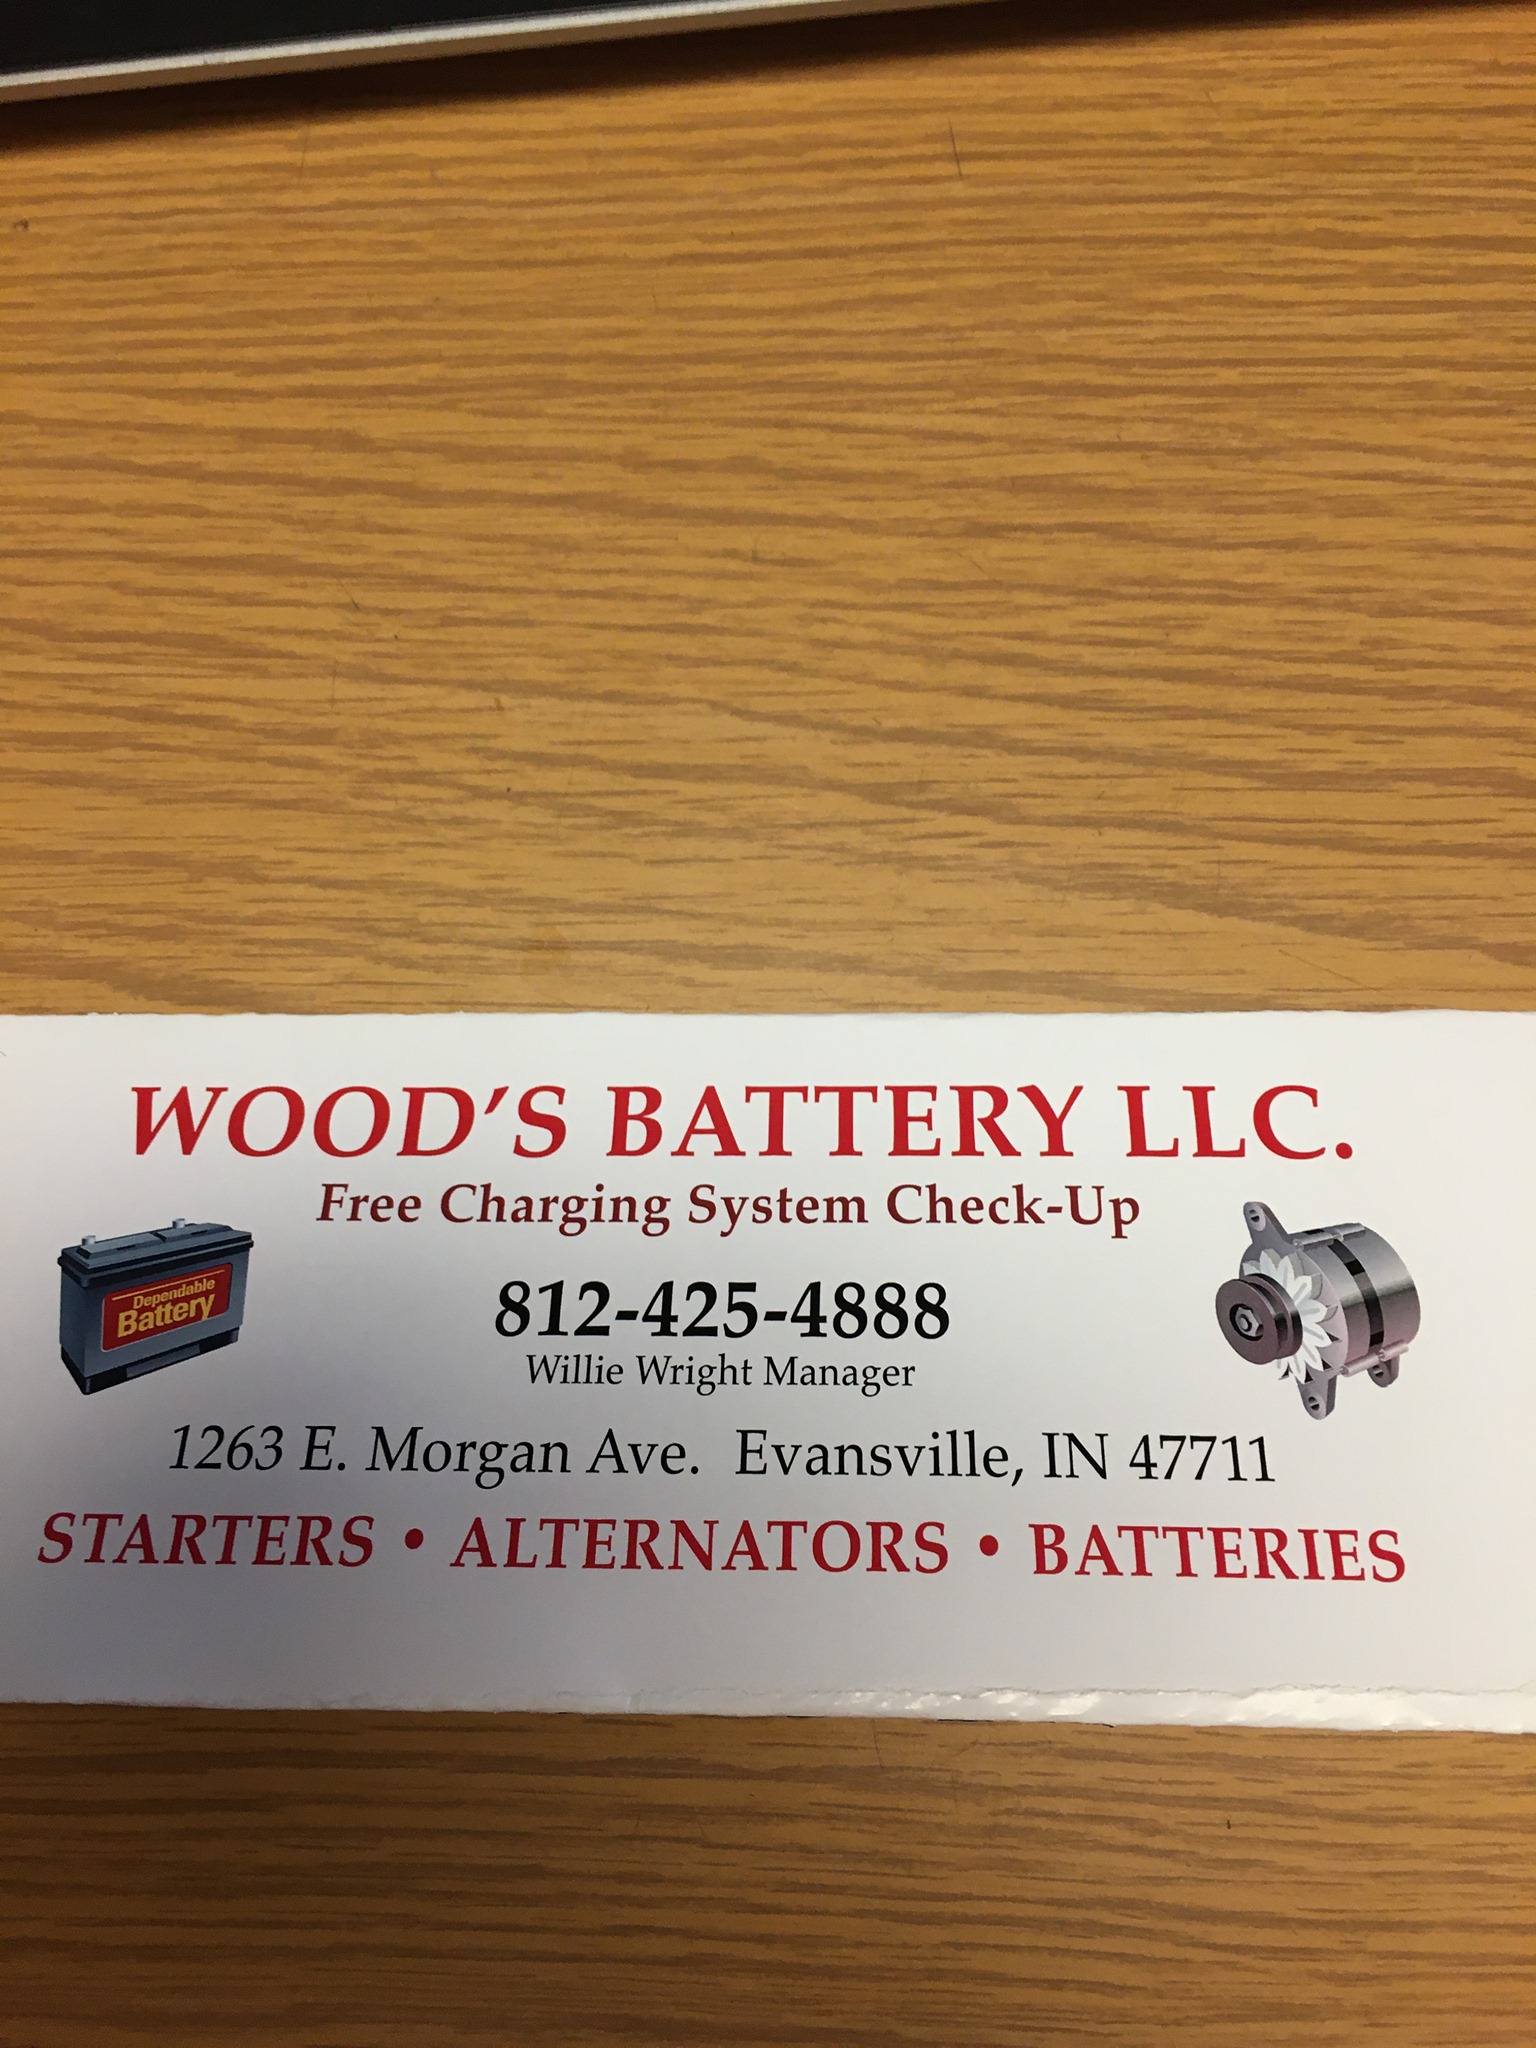 Wood's Battery LLC